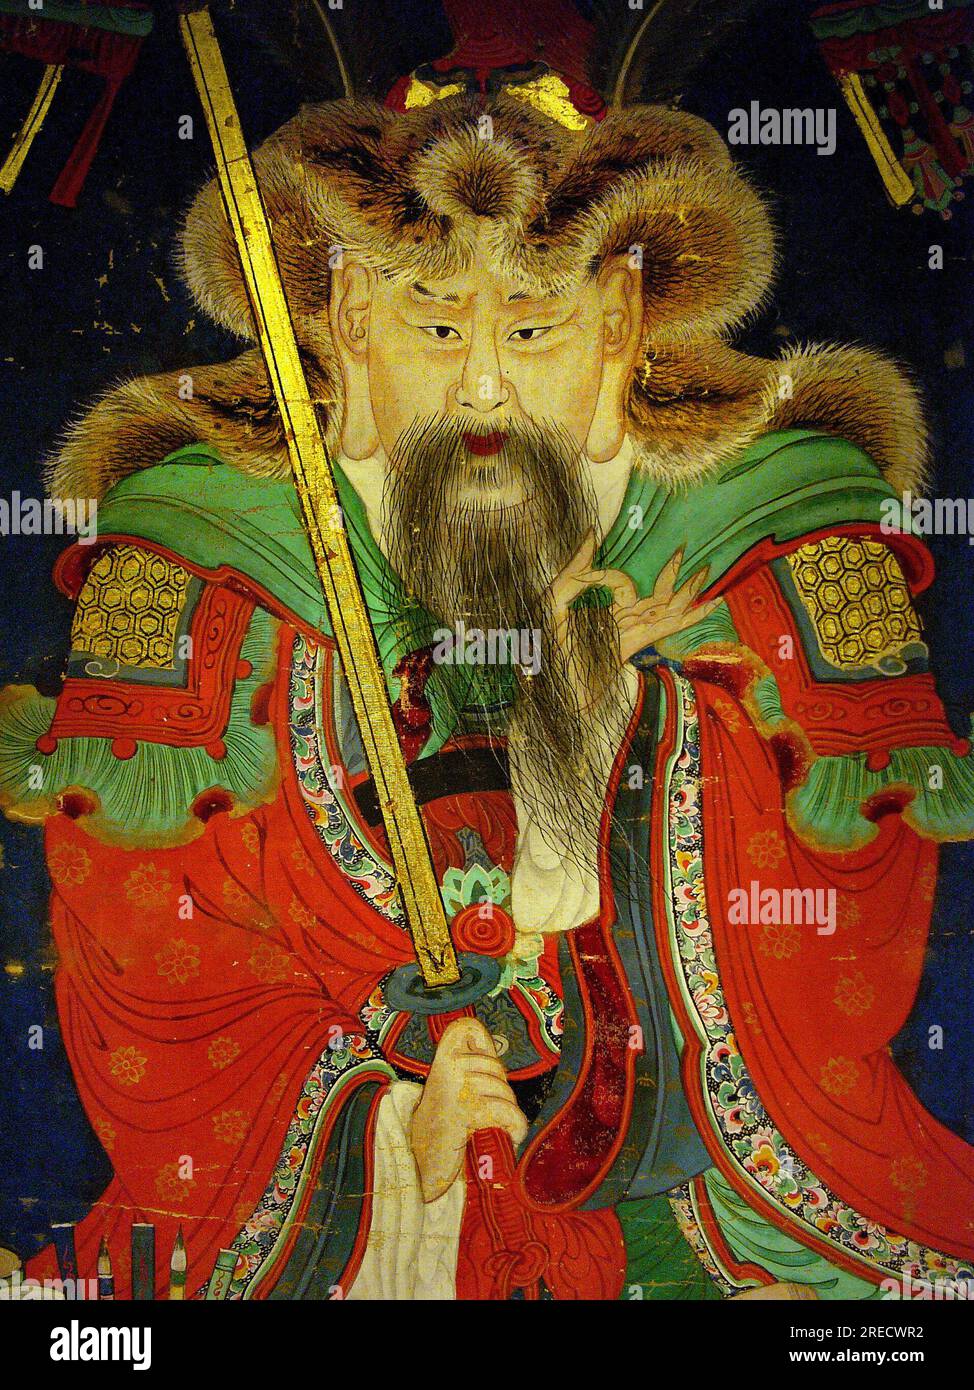 Detail, portrait du Dixieme Roi (Yeonsangun, 1476-1506) - peinture sur soie, XIXe siecle sous la periode Joseon, Taegosa, Coree. Photographie, Musee National de Seoul, Republique de Coree Stock Photo